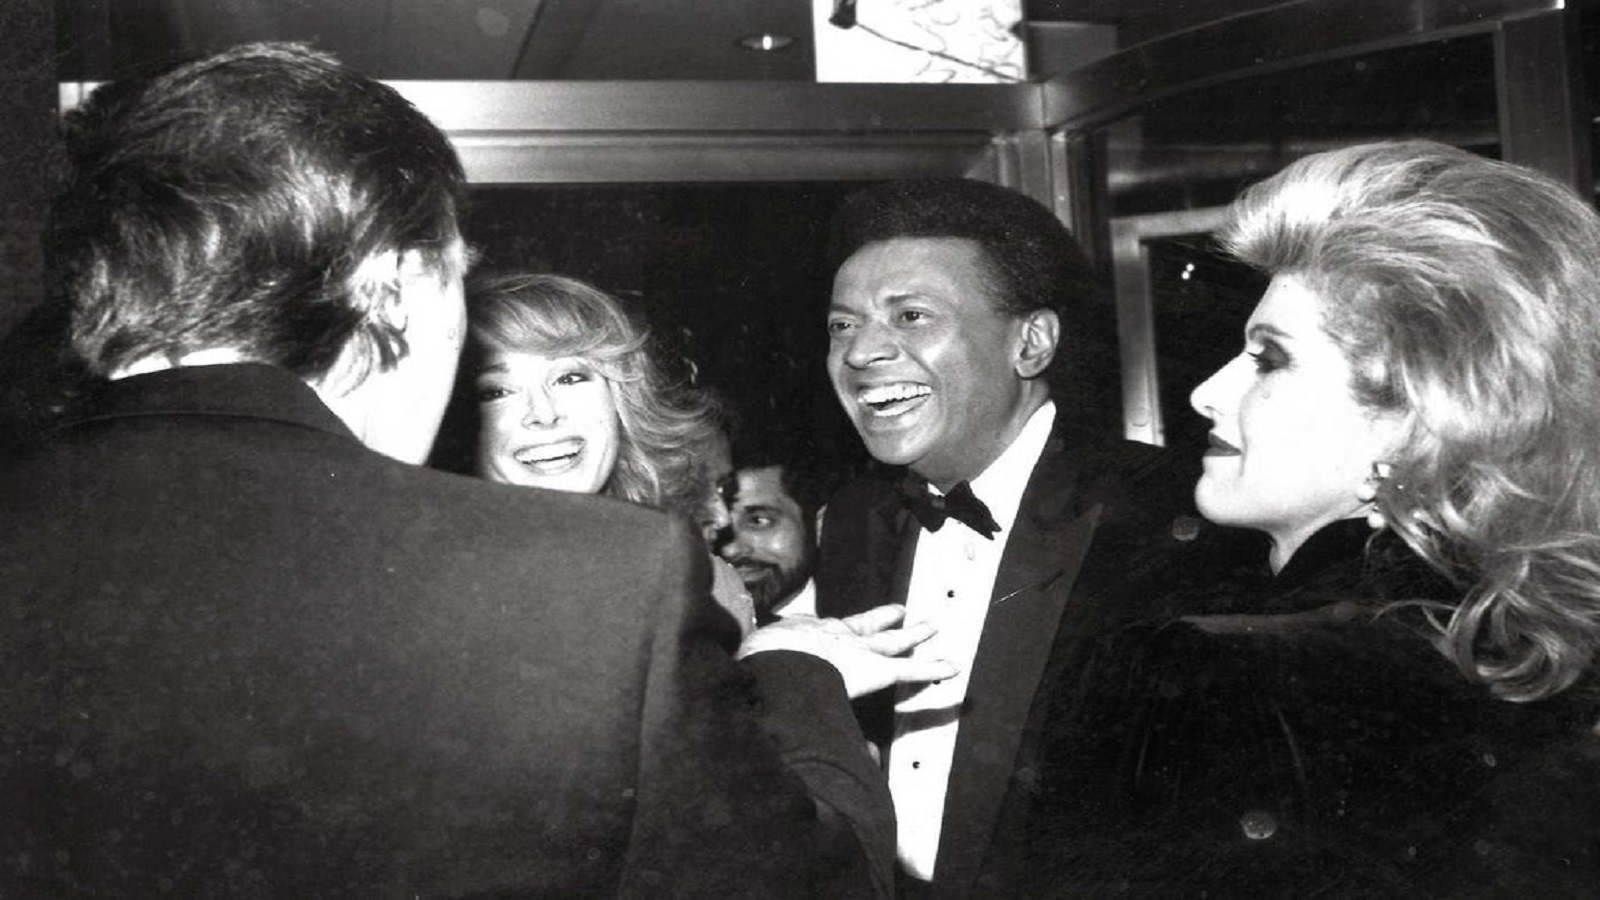 ترامب وزوجته مع إي جاين كارول وزوجها في الثمانينات (عن نيويورك تايمز)